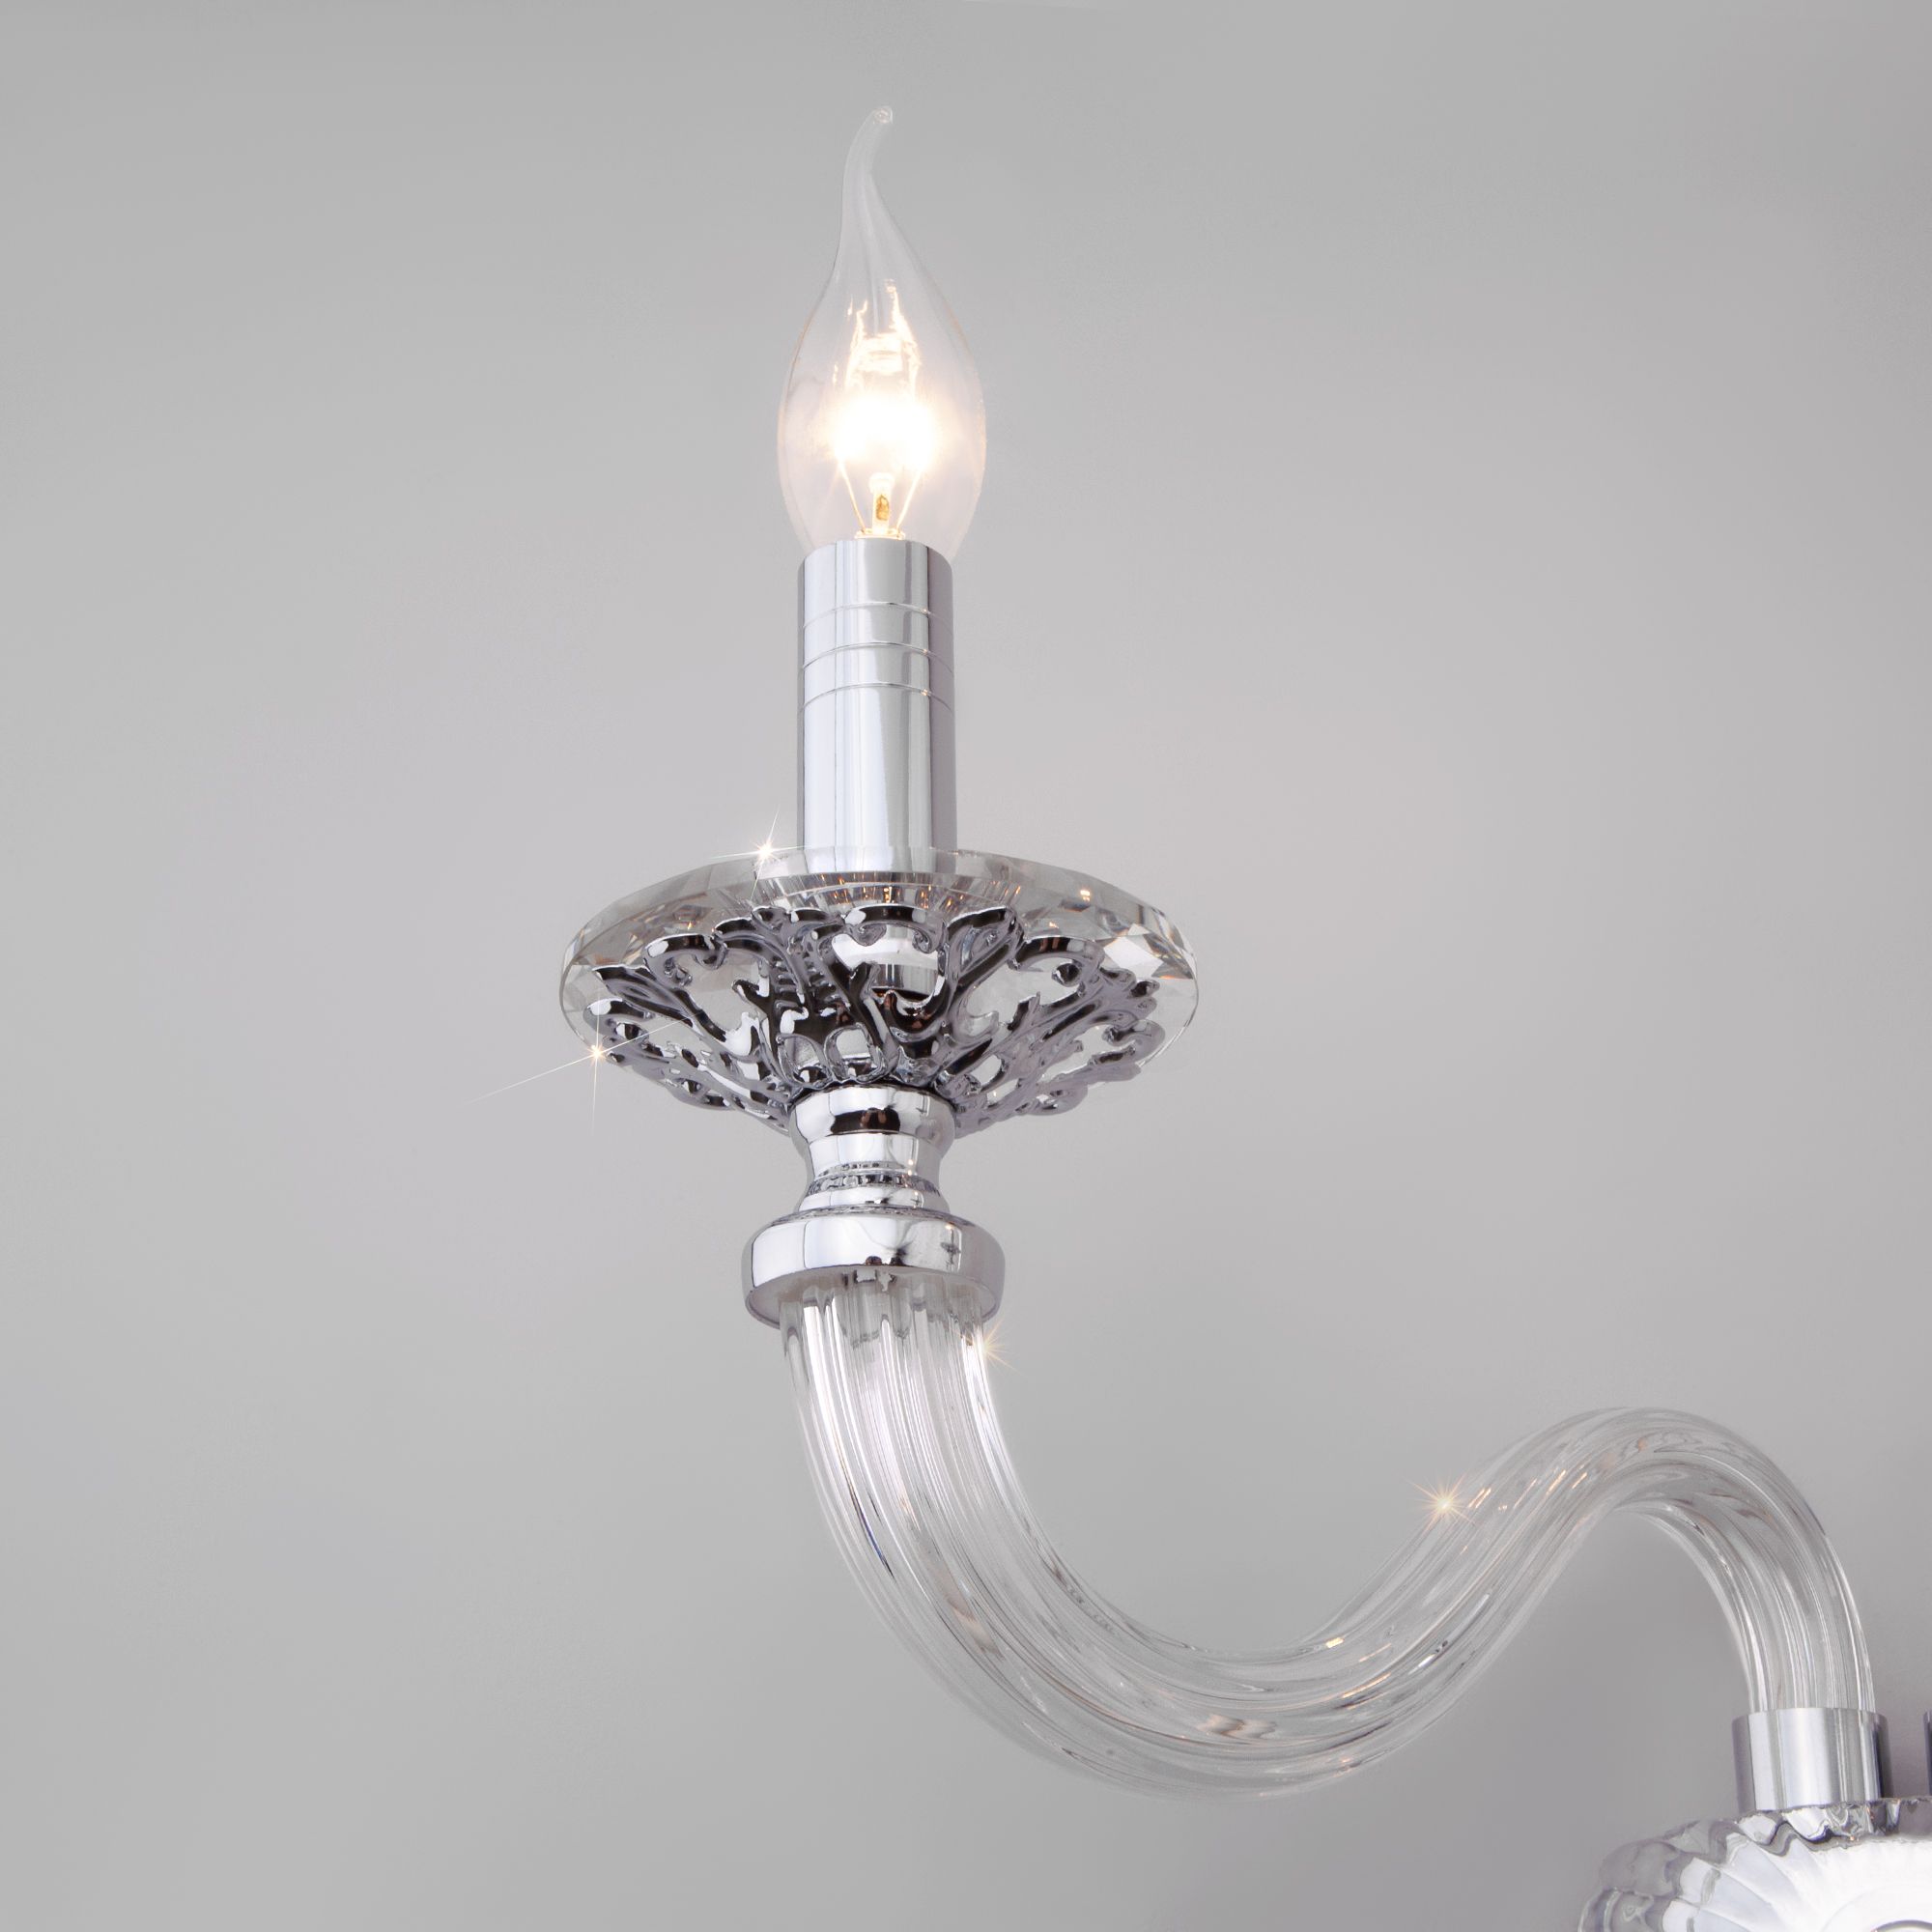 Настенный светильник в классическом стиле Bogate's Olenna 338/2. Фото 3